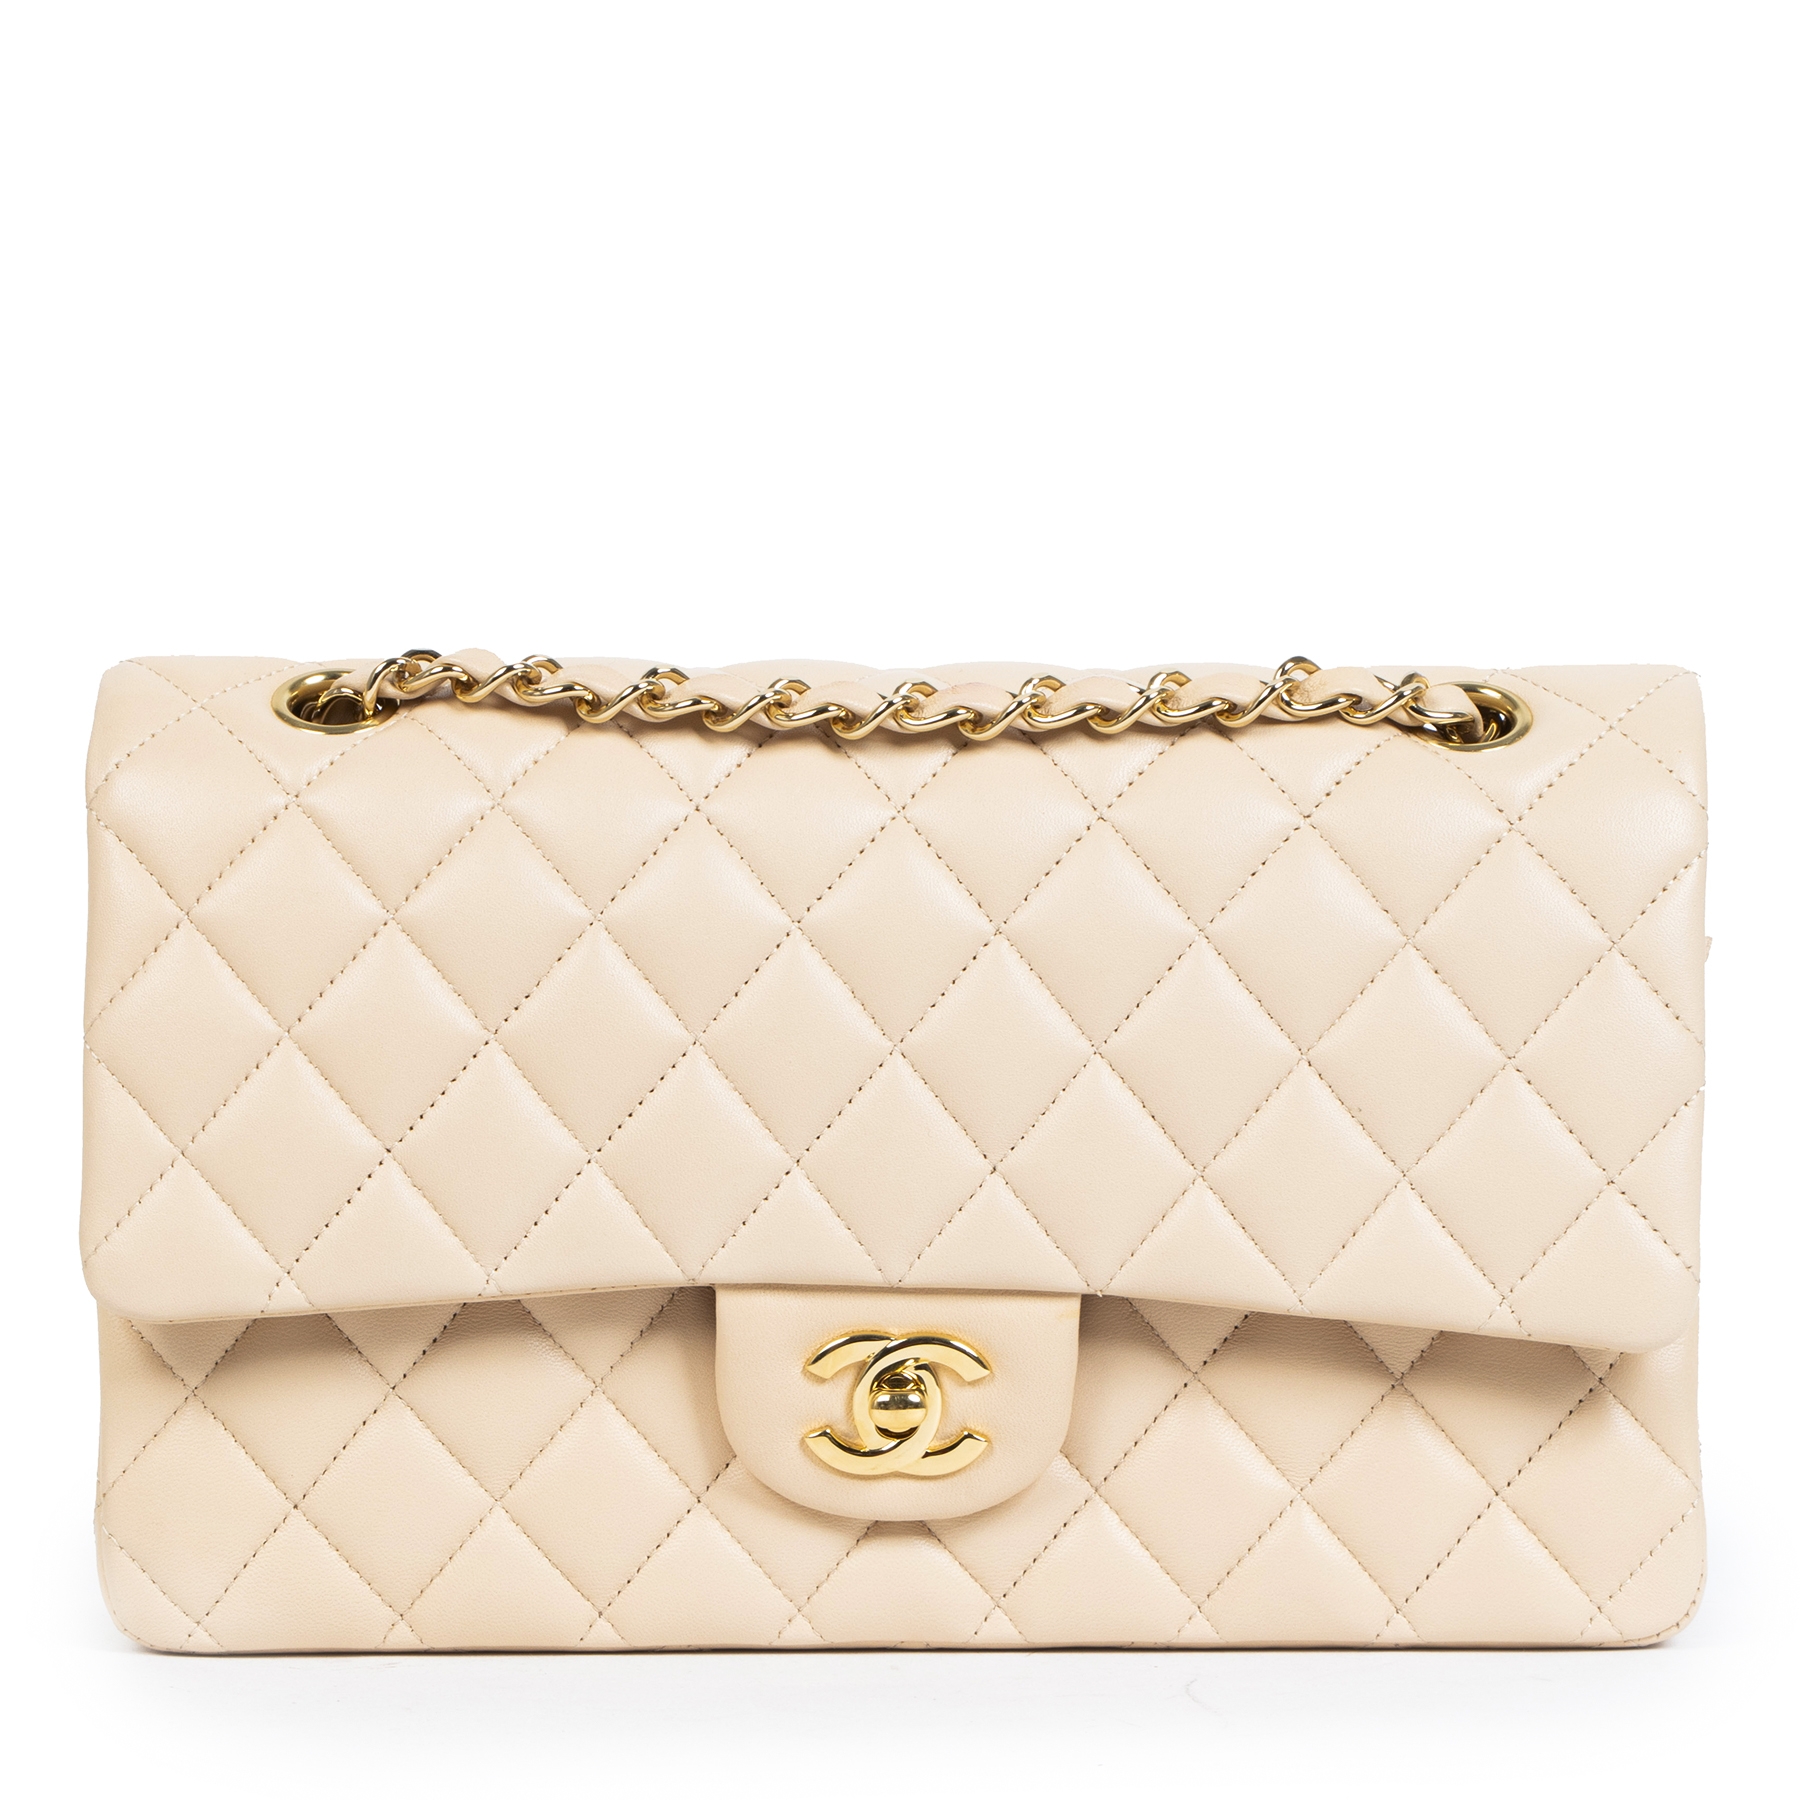 Chanel classic flap